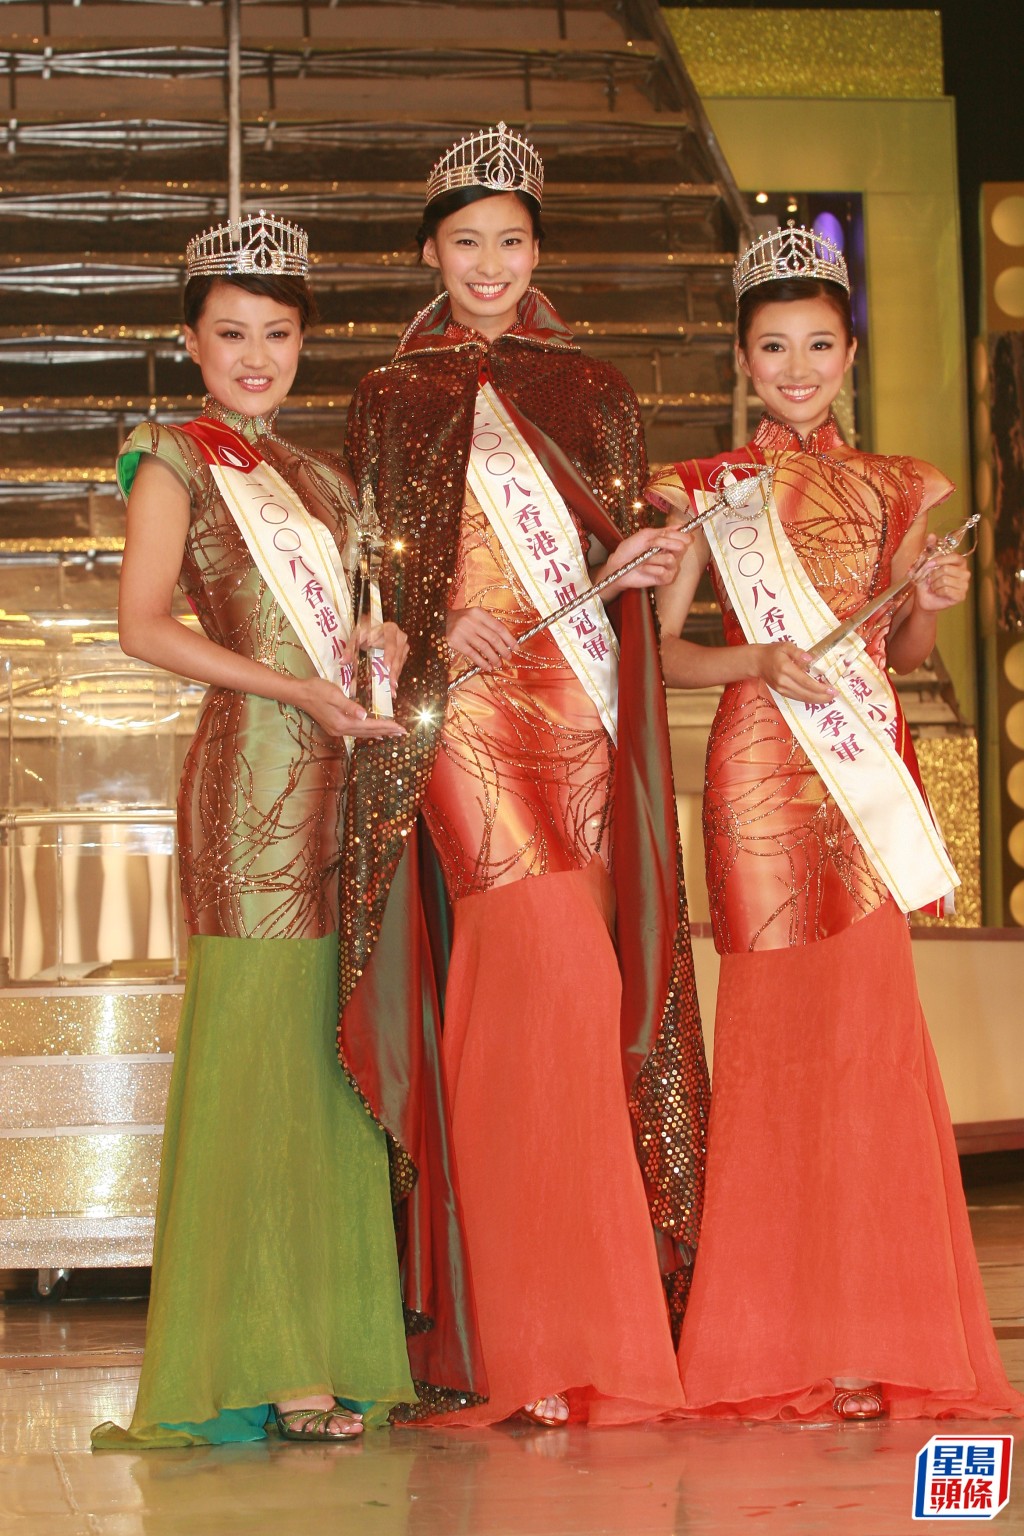 馬賽當年獲得季軍及最上鏡小姐，同年冠軍為張舒雅（中）、亞軍陳倩揚。